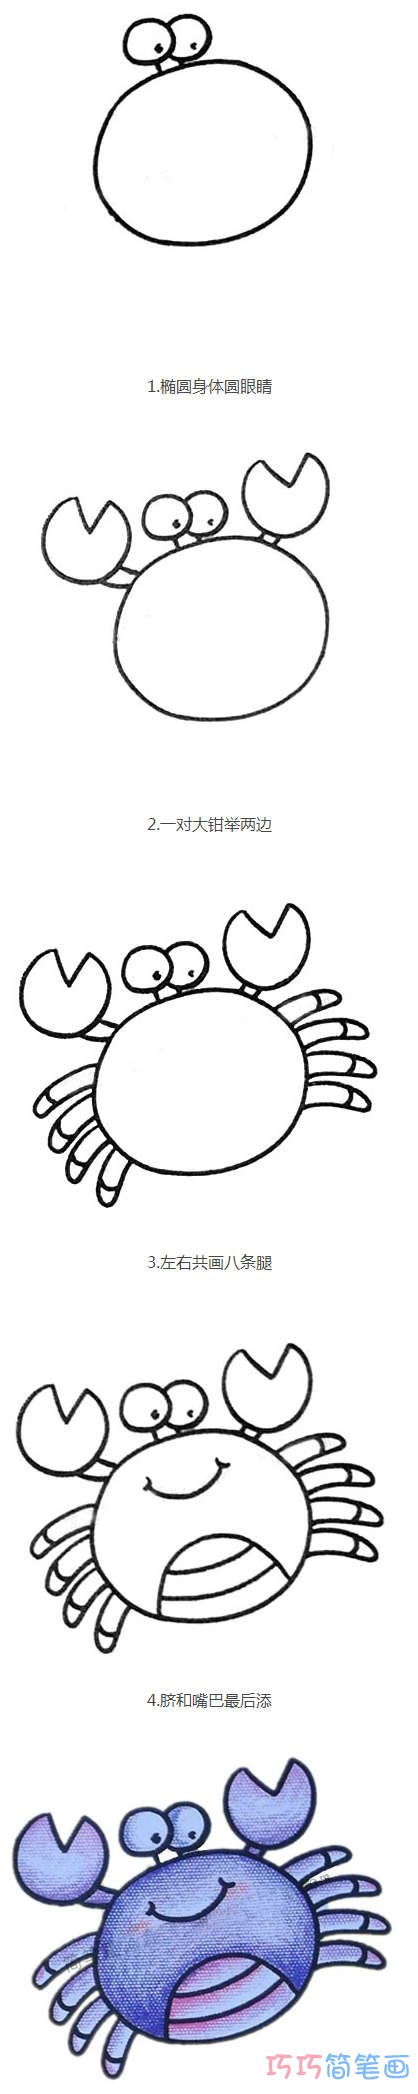 卡通螃蟹简笔画图片 螃蟹的画法步骤图涂颜色